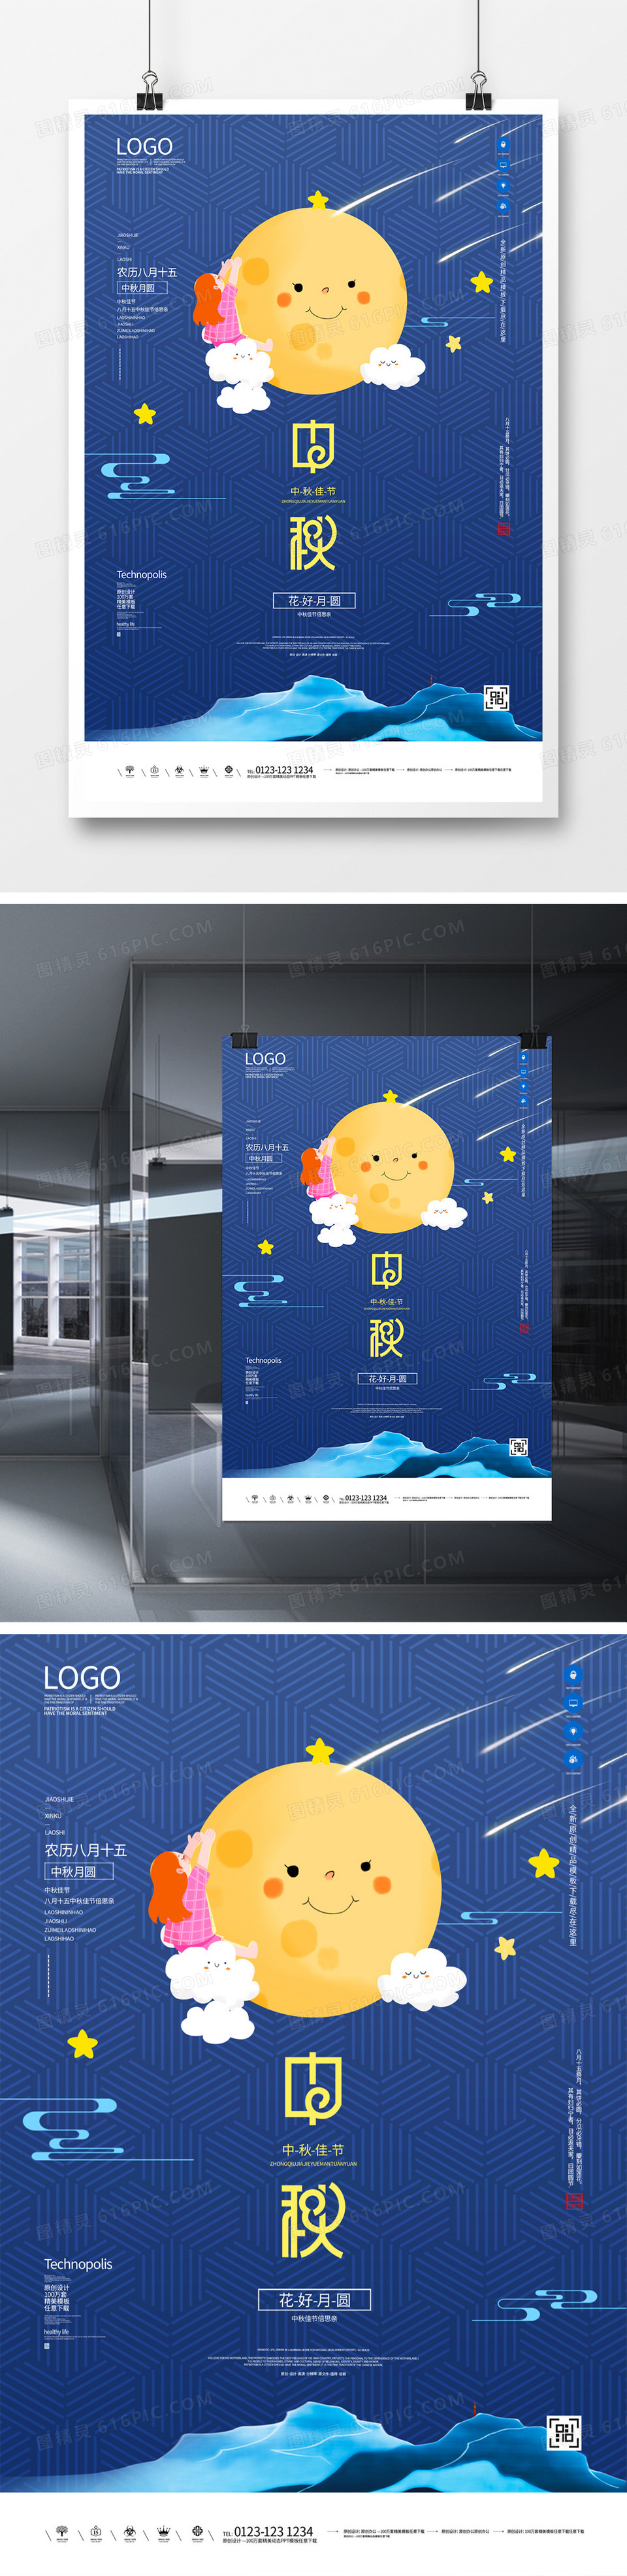 中秋佳节创意卡通宣传海报模板设计  